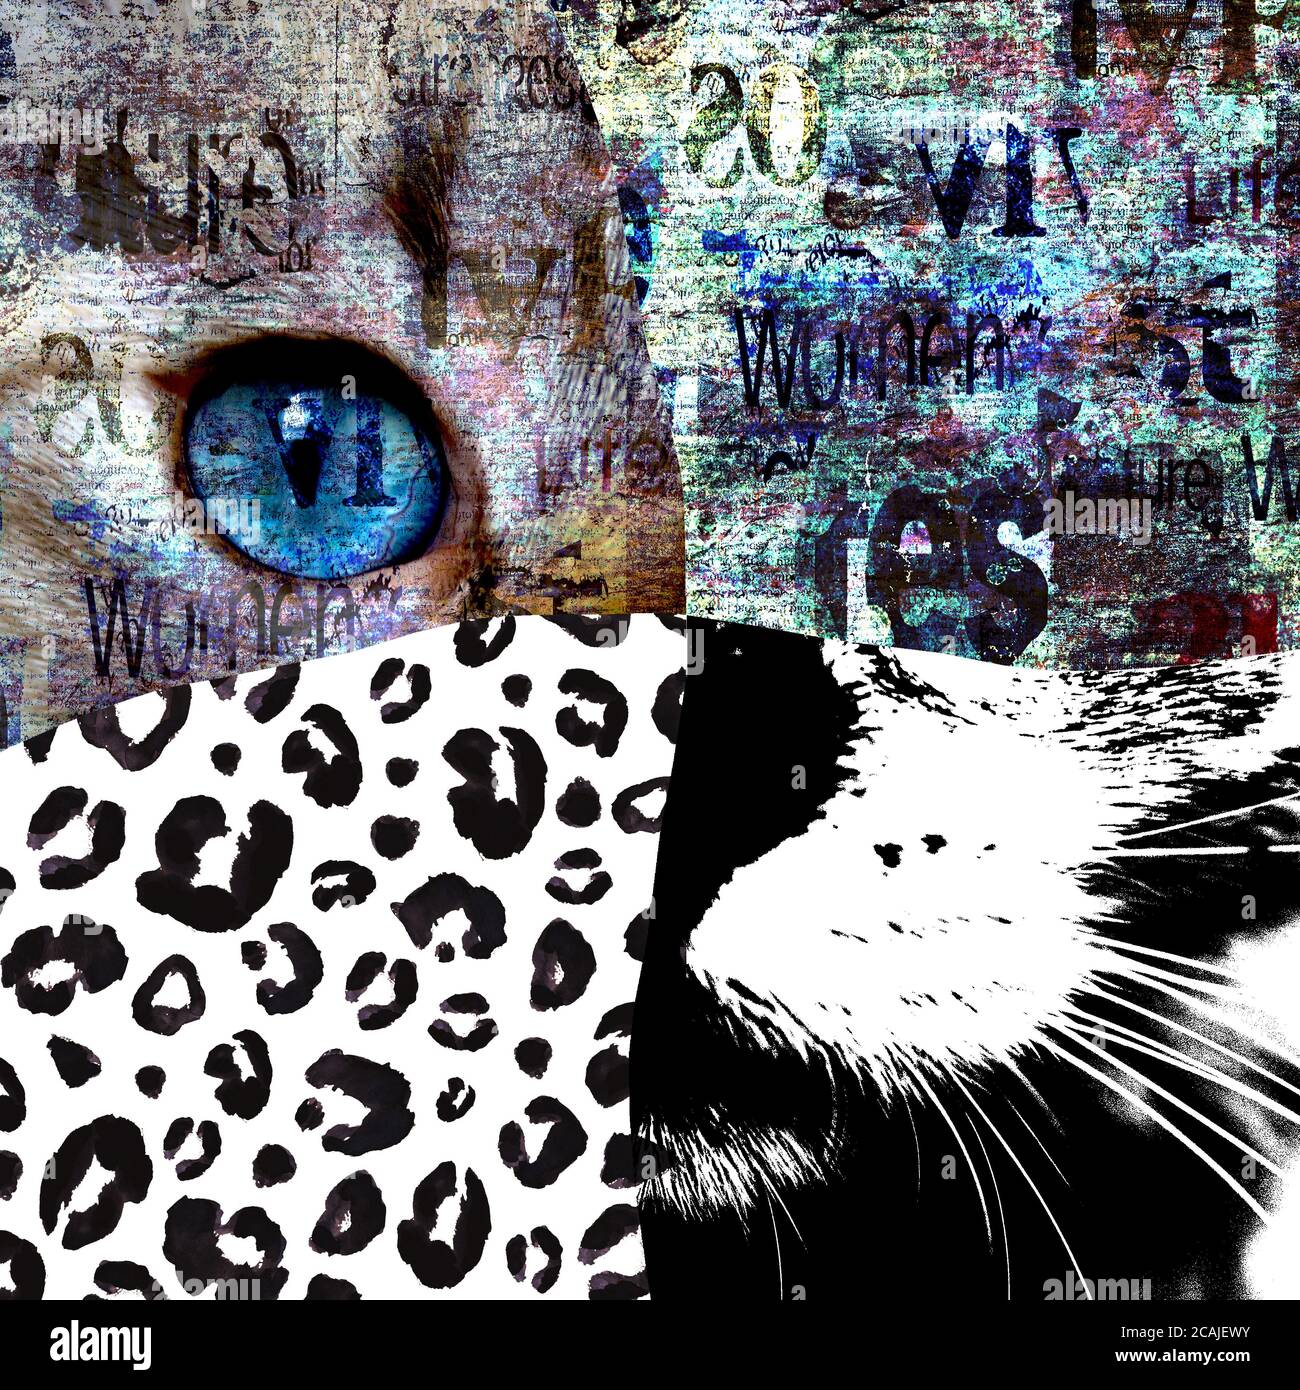 Collage de arte de medios mixtos. Vista de cerca del gato con ojos verdes.  Retrato cortado en blanco y negro estampado de leopardo pintado a mano y  papel de periódico imprimir te